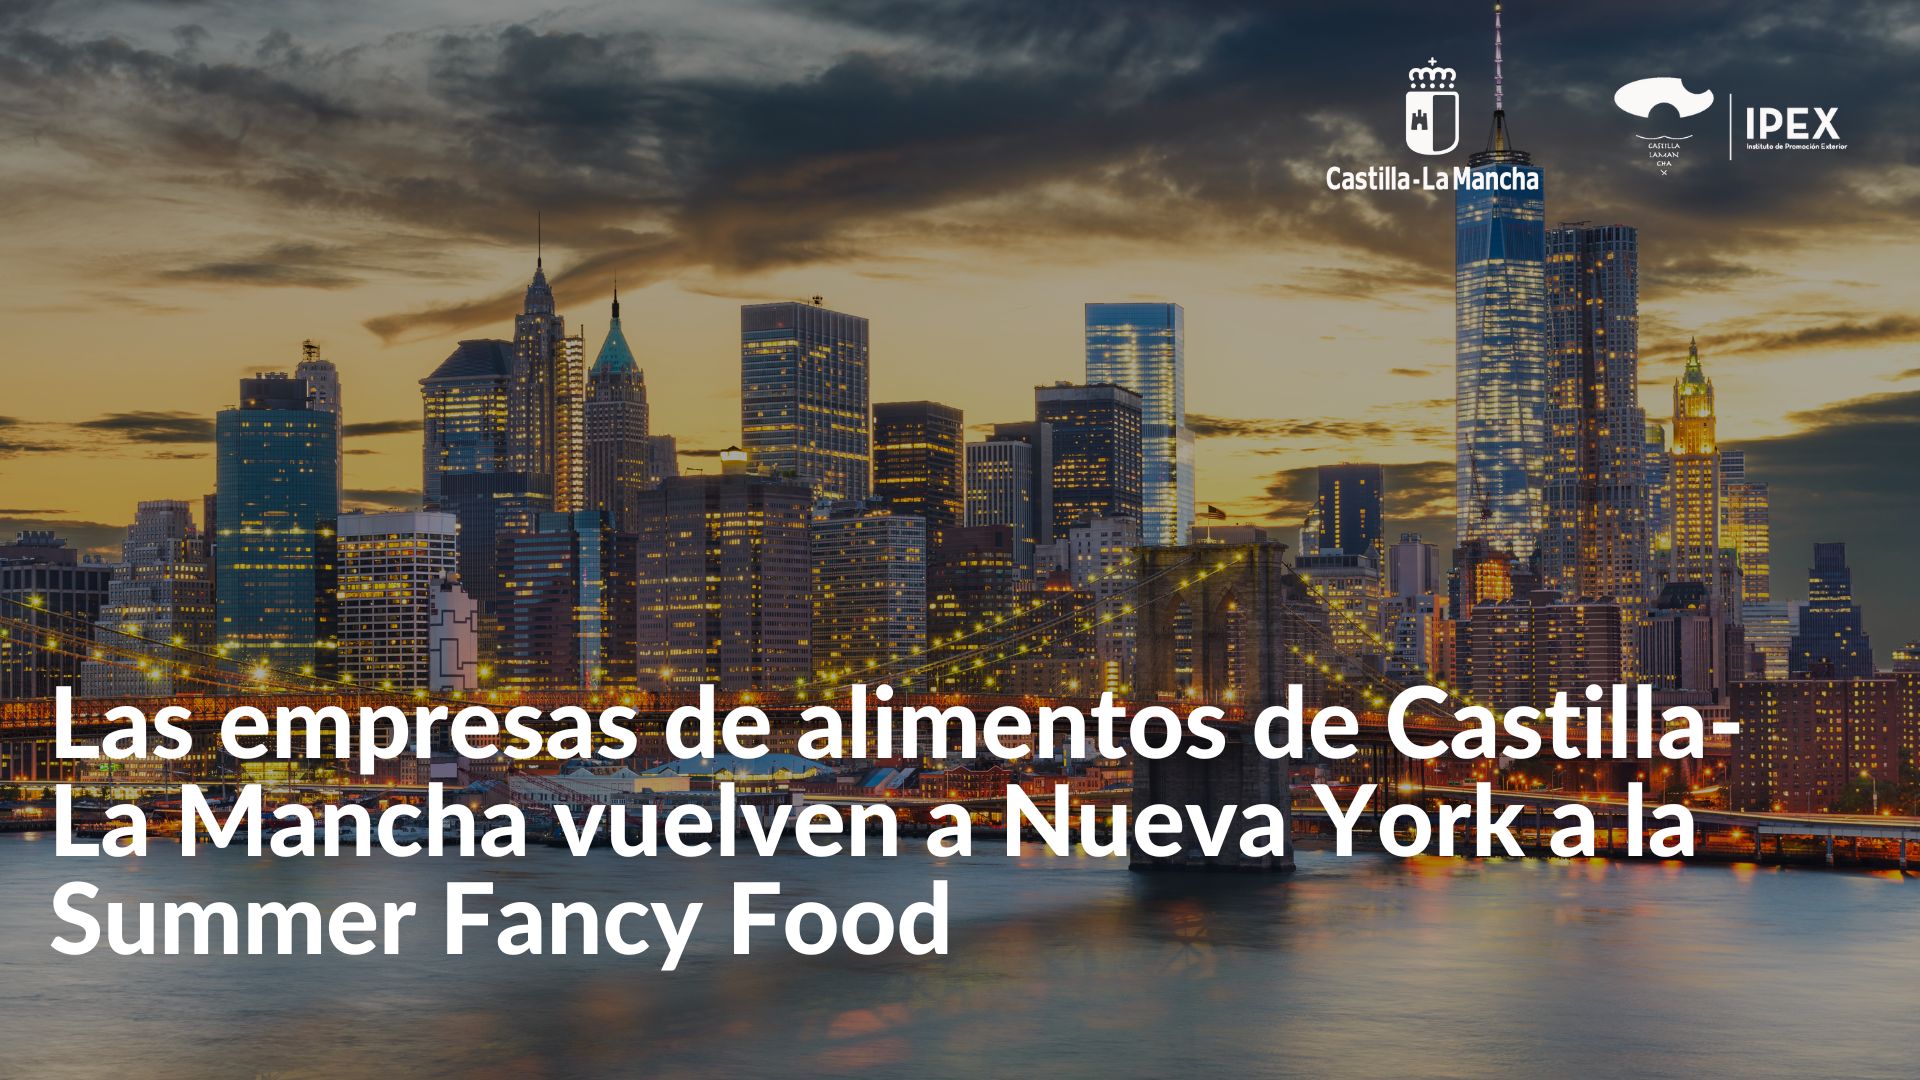 Las empresas de alimentos de Castilla-La Mancha vuelven a Nueva York a la Summer Fancy Food